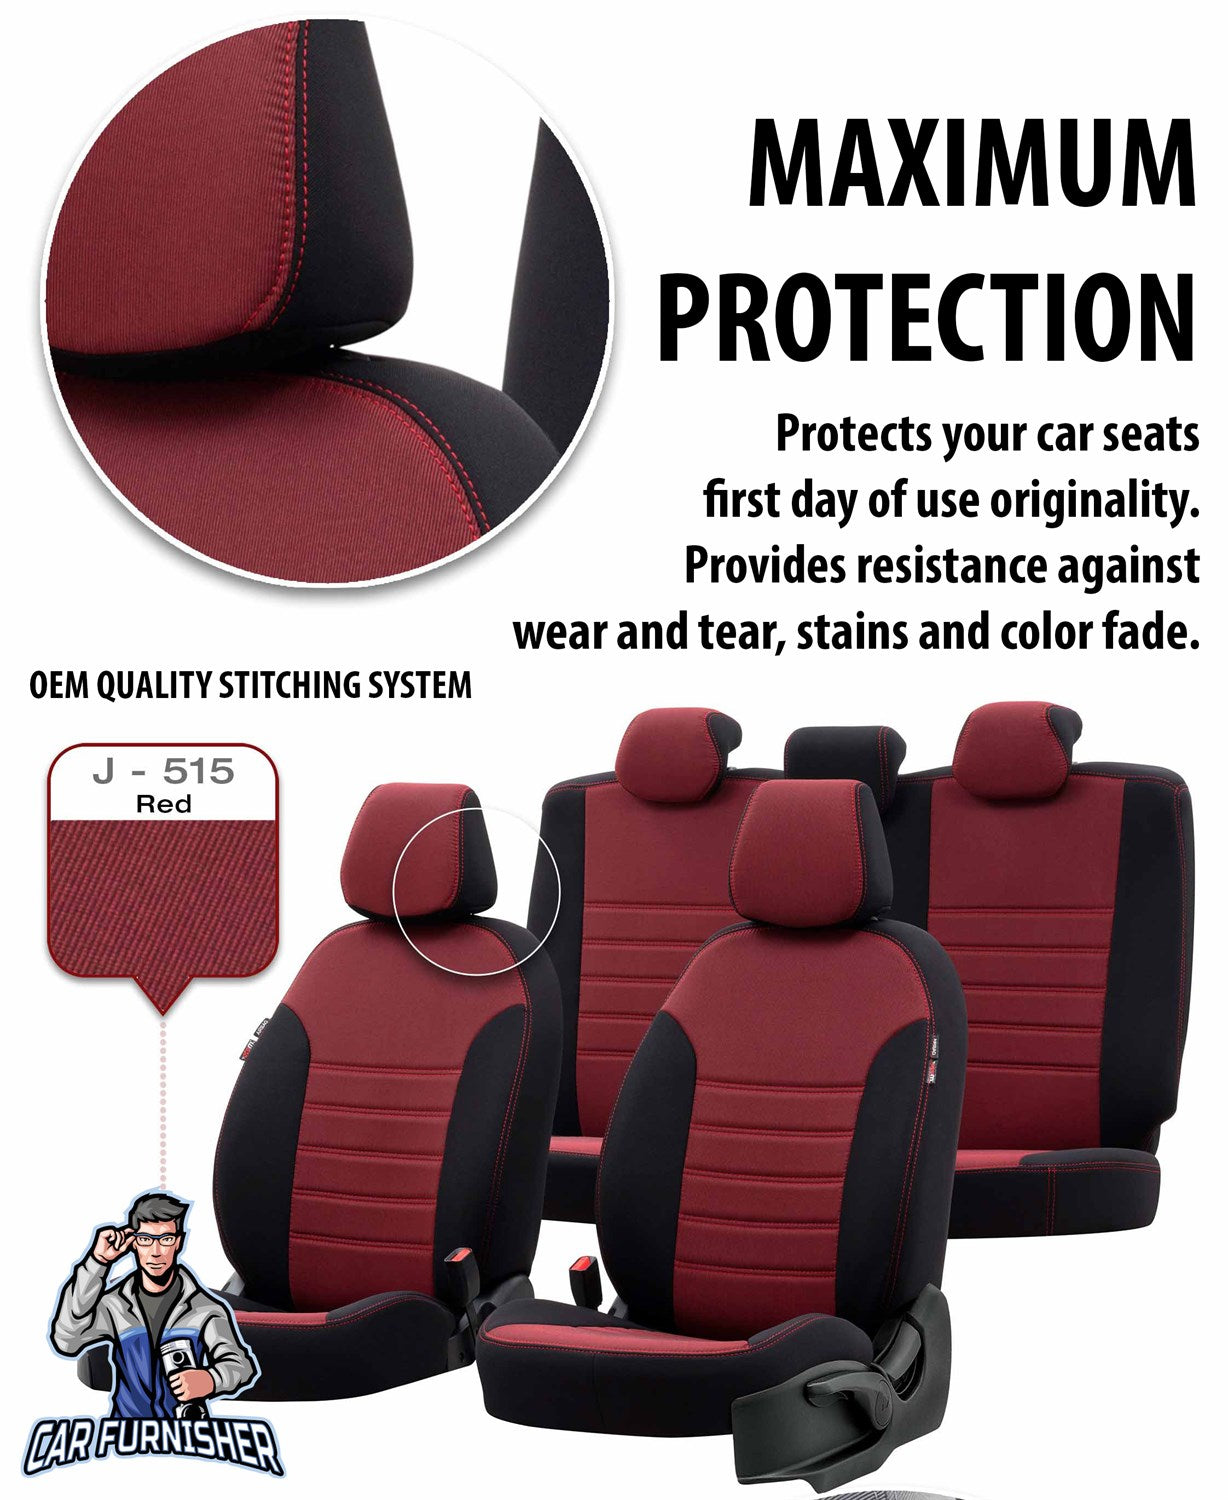 Hyundai Elantra Seat Covers Original Jacquard Design Gray Jacquard Fabric